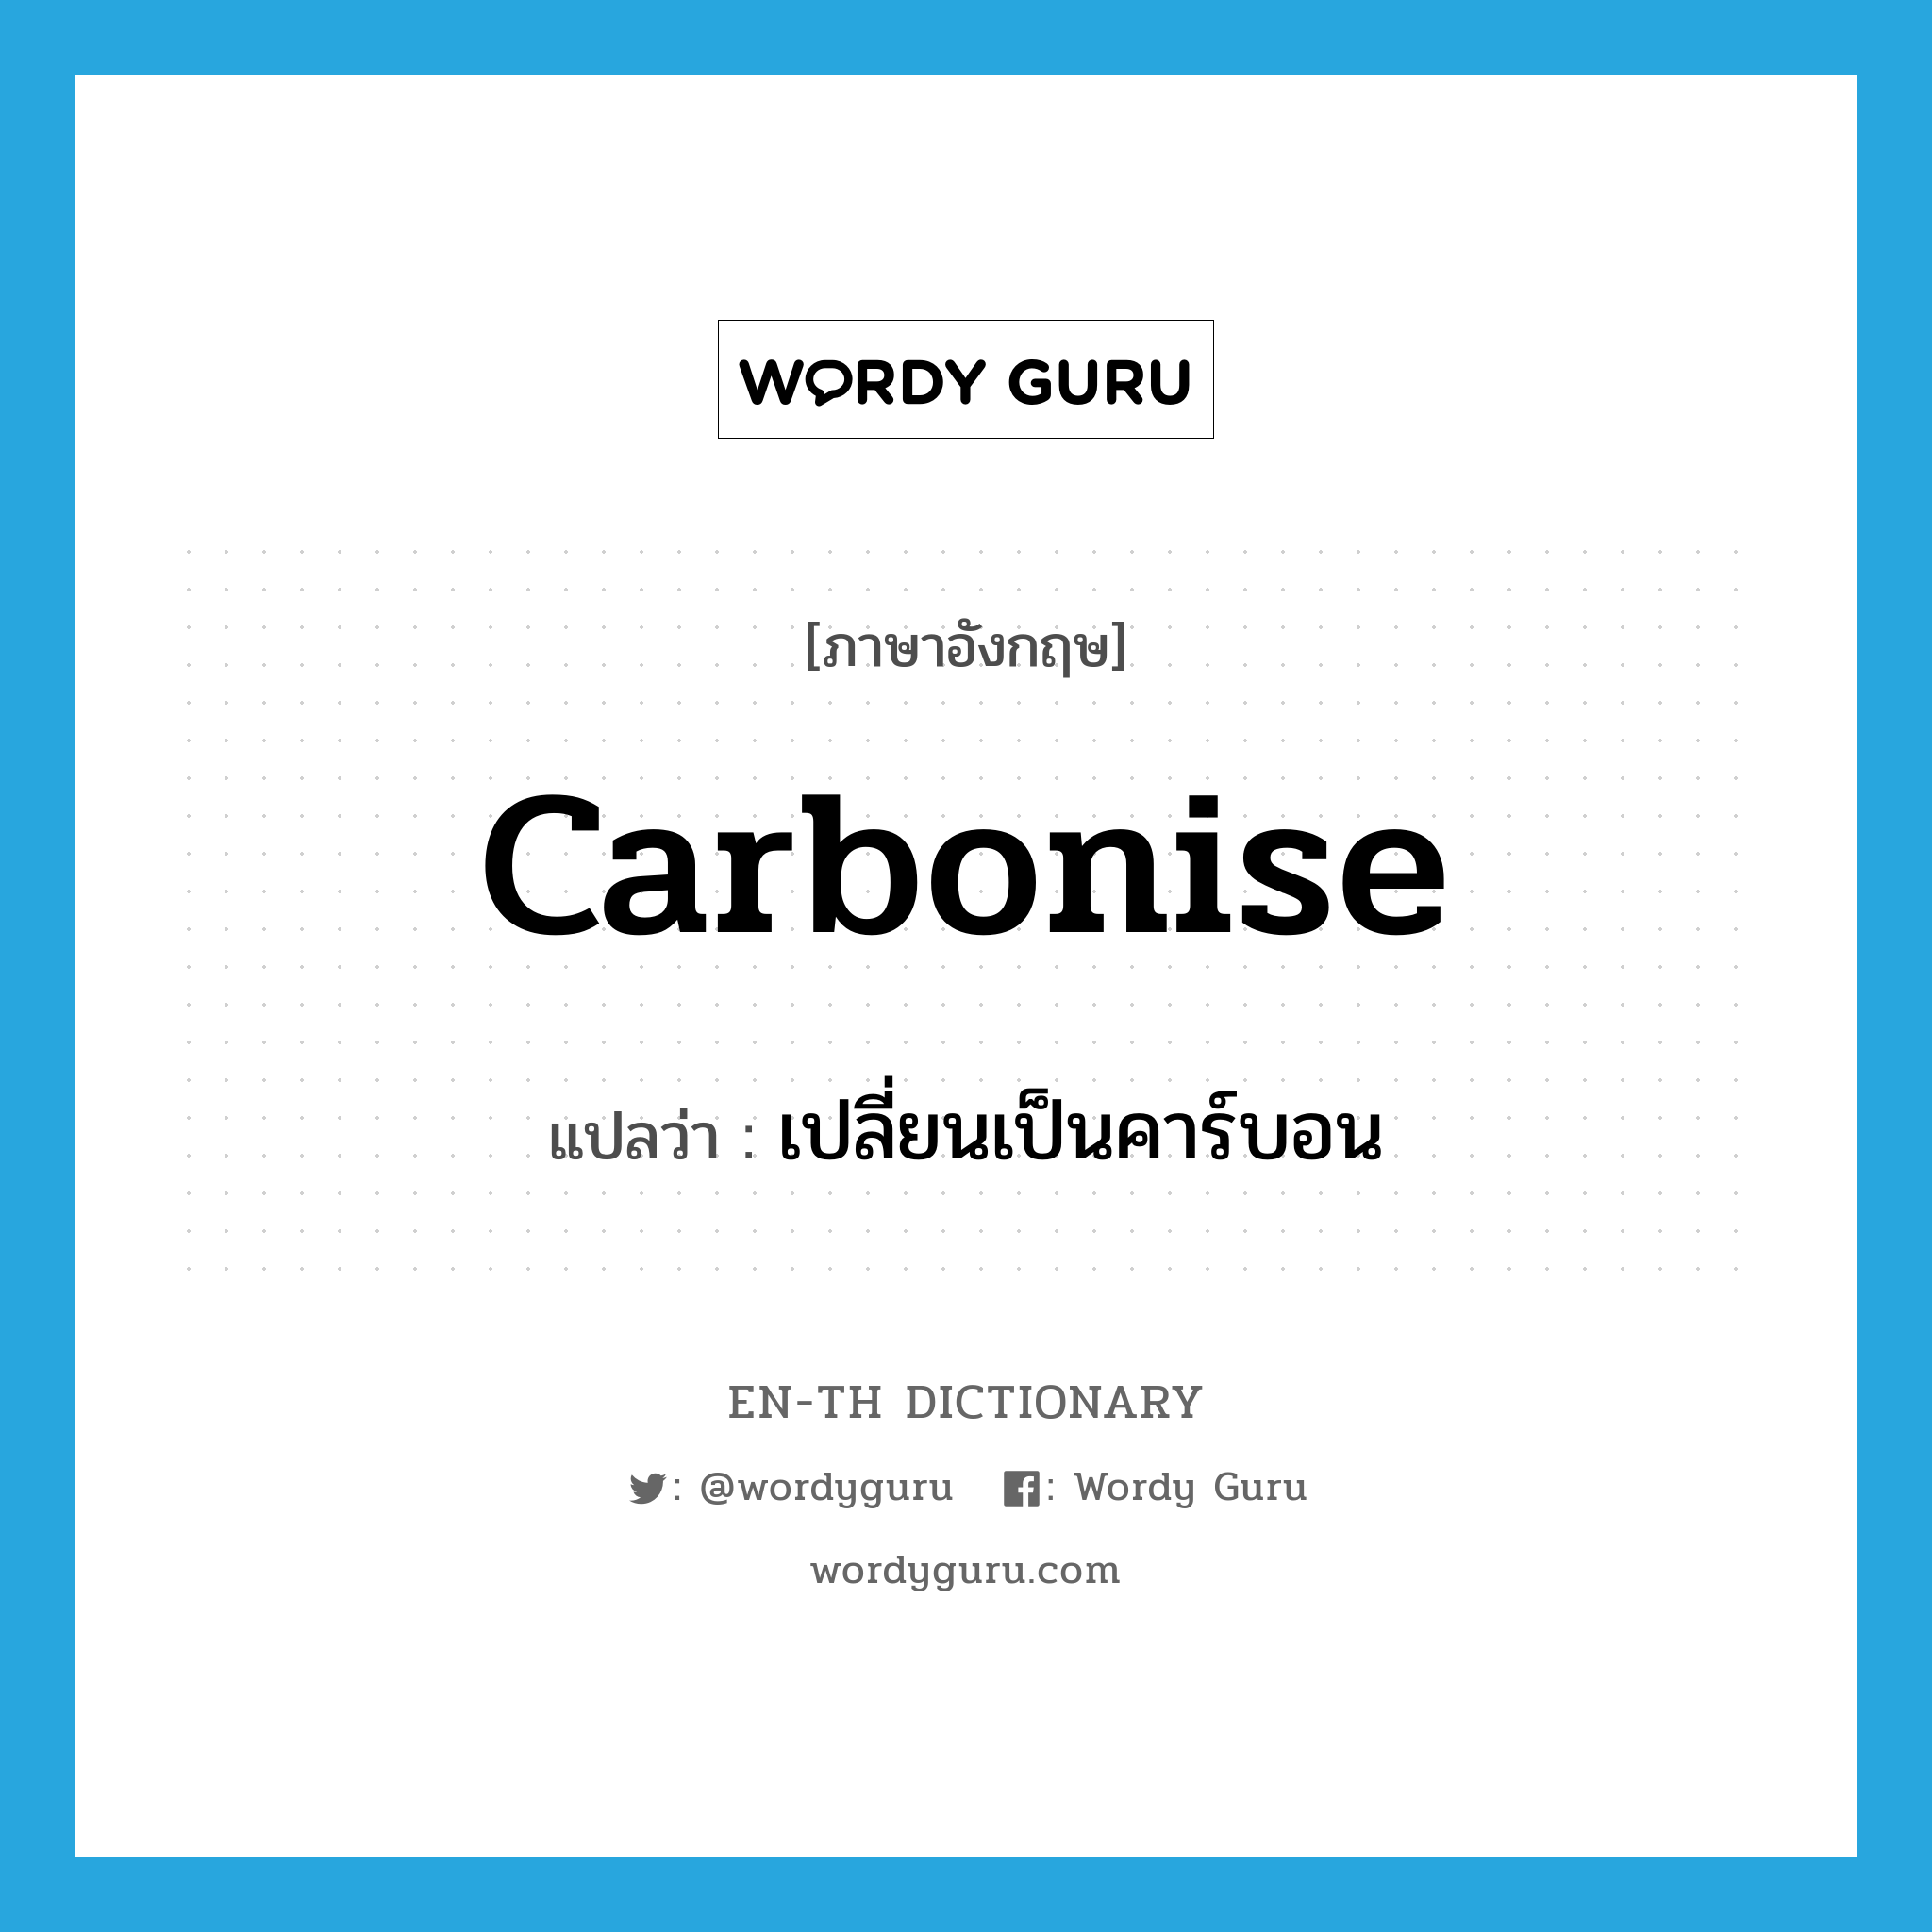 เปลี่ยนเป็นคาร์บอน ภาษาอังกฤษ?, คำศัพท์ภาษาอังกฤษ เปลี่ยนเป็นคาร์บอน แปลว่า carbonise ประเภท VI หมวด VI